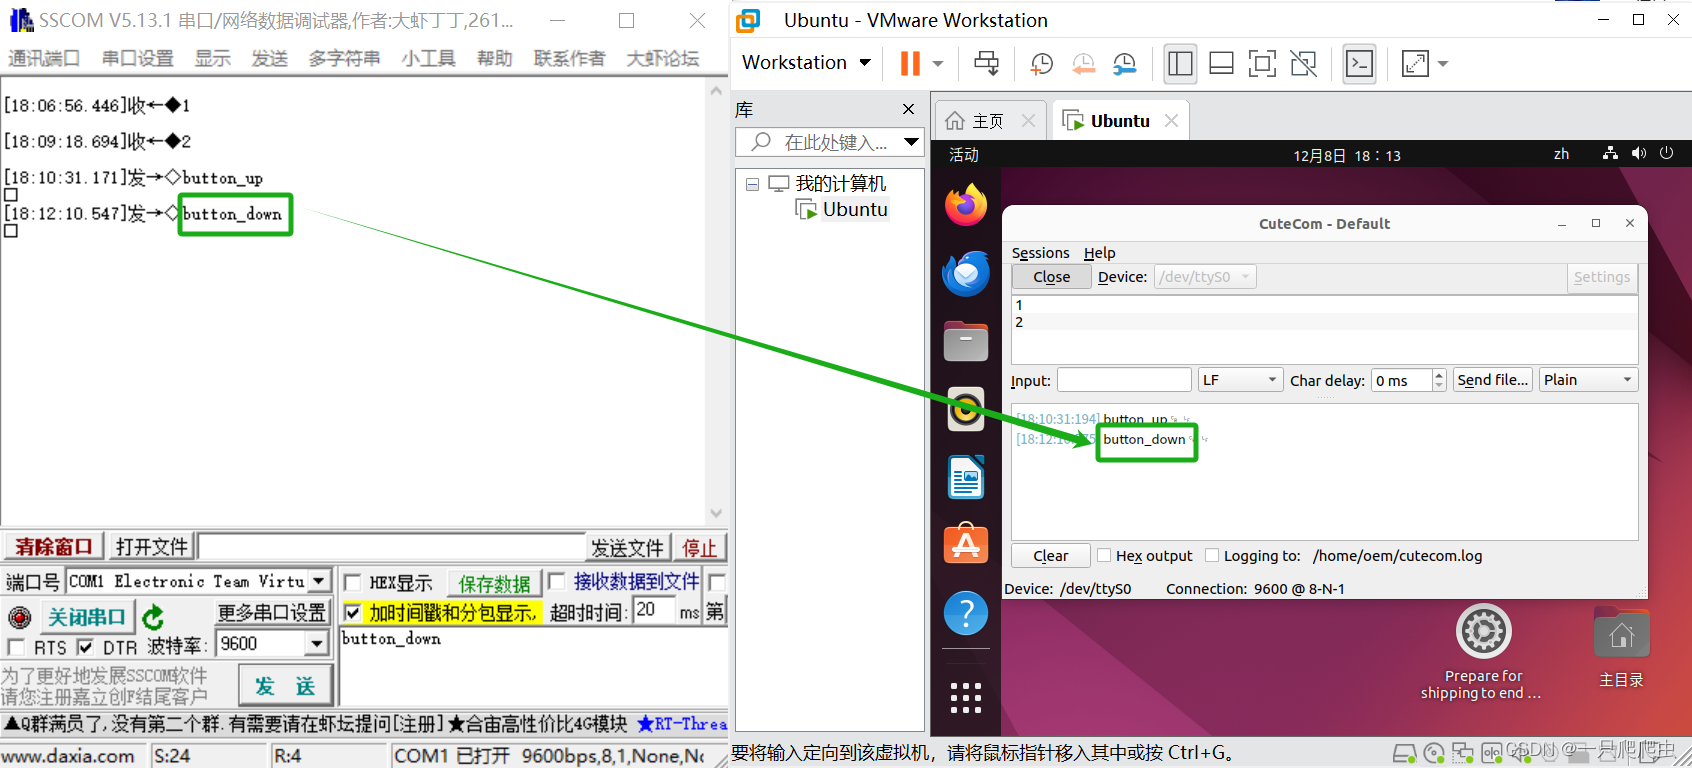 windows系统和虚拟机上ubuntu系统通过虚拟串口进行通信